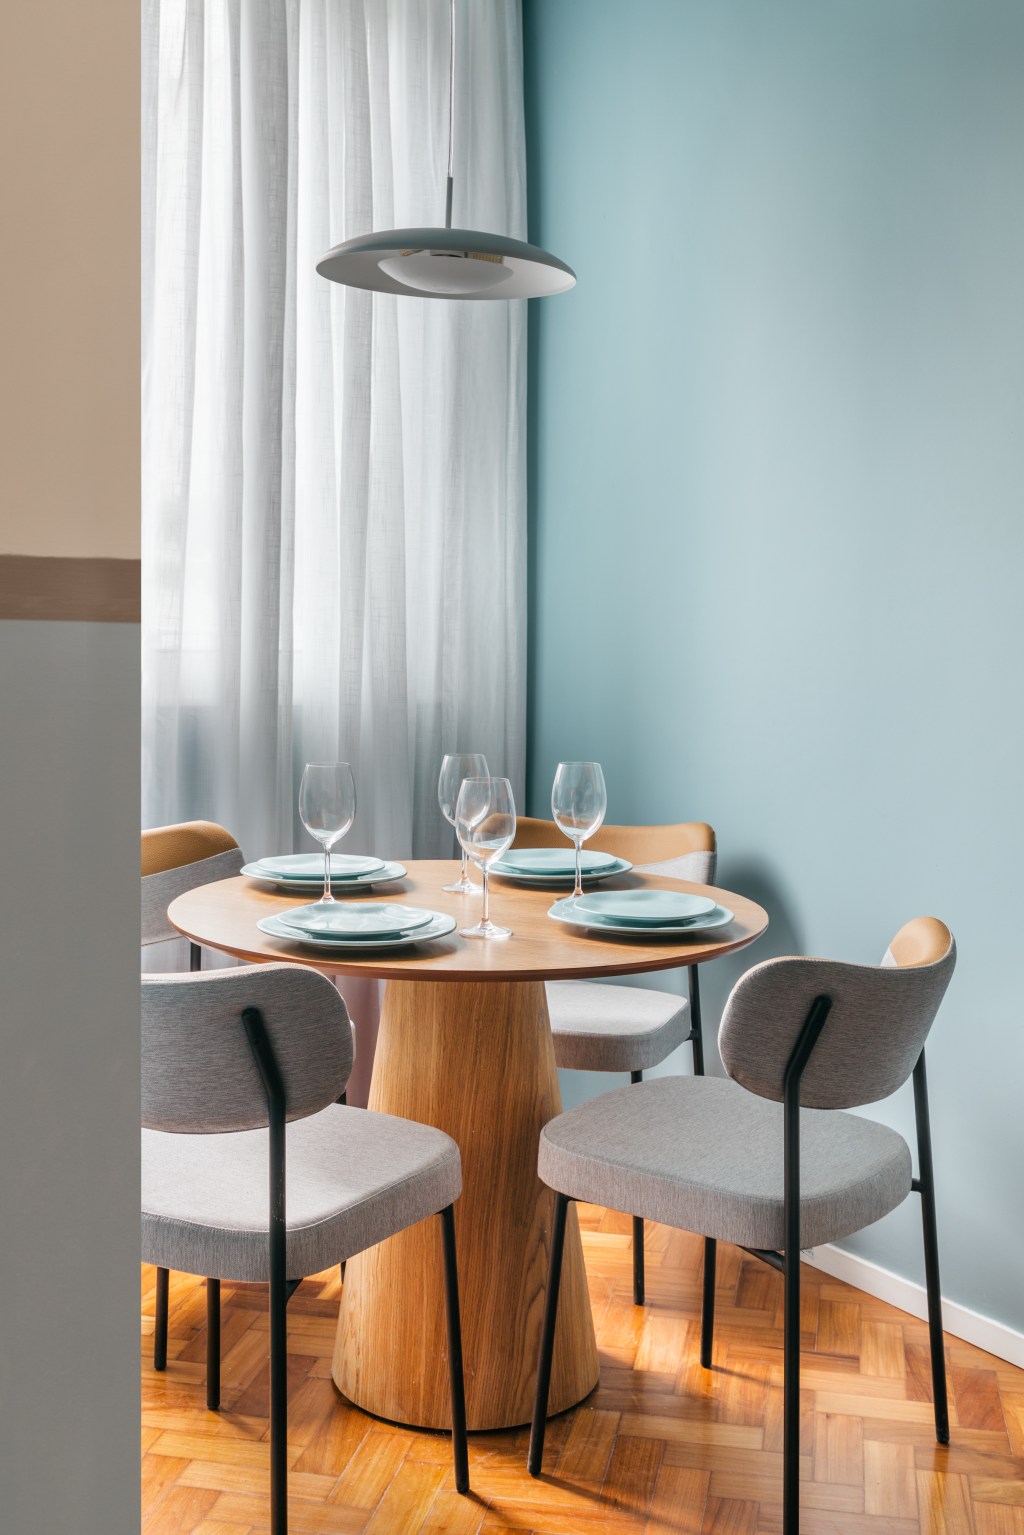 Apê de 25 m² ganha décor praiana com parede de cerâmica azul. Projeto de Rodolfo Consoli. Na foto, sala de jantar com mesa redonda de madeira.